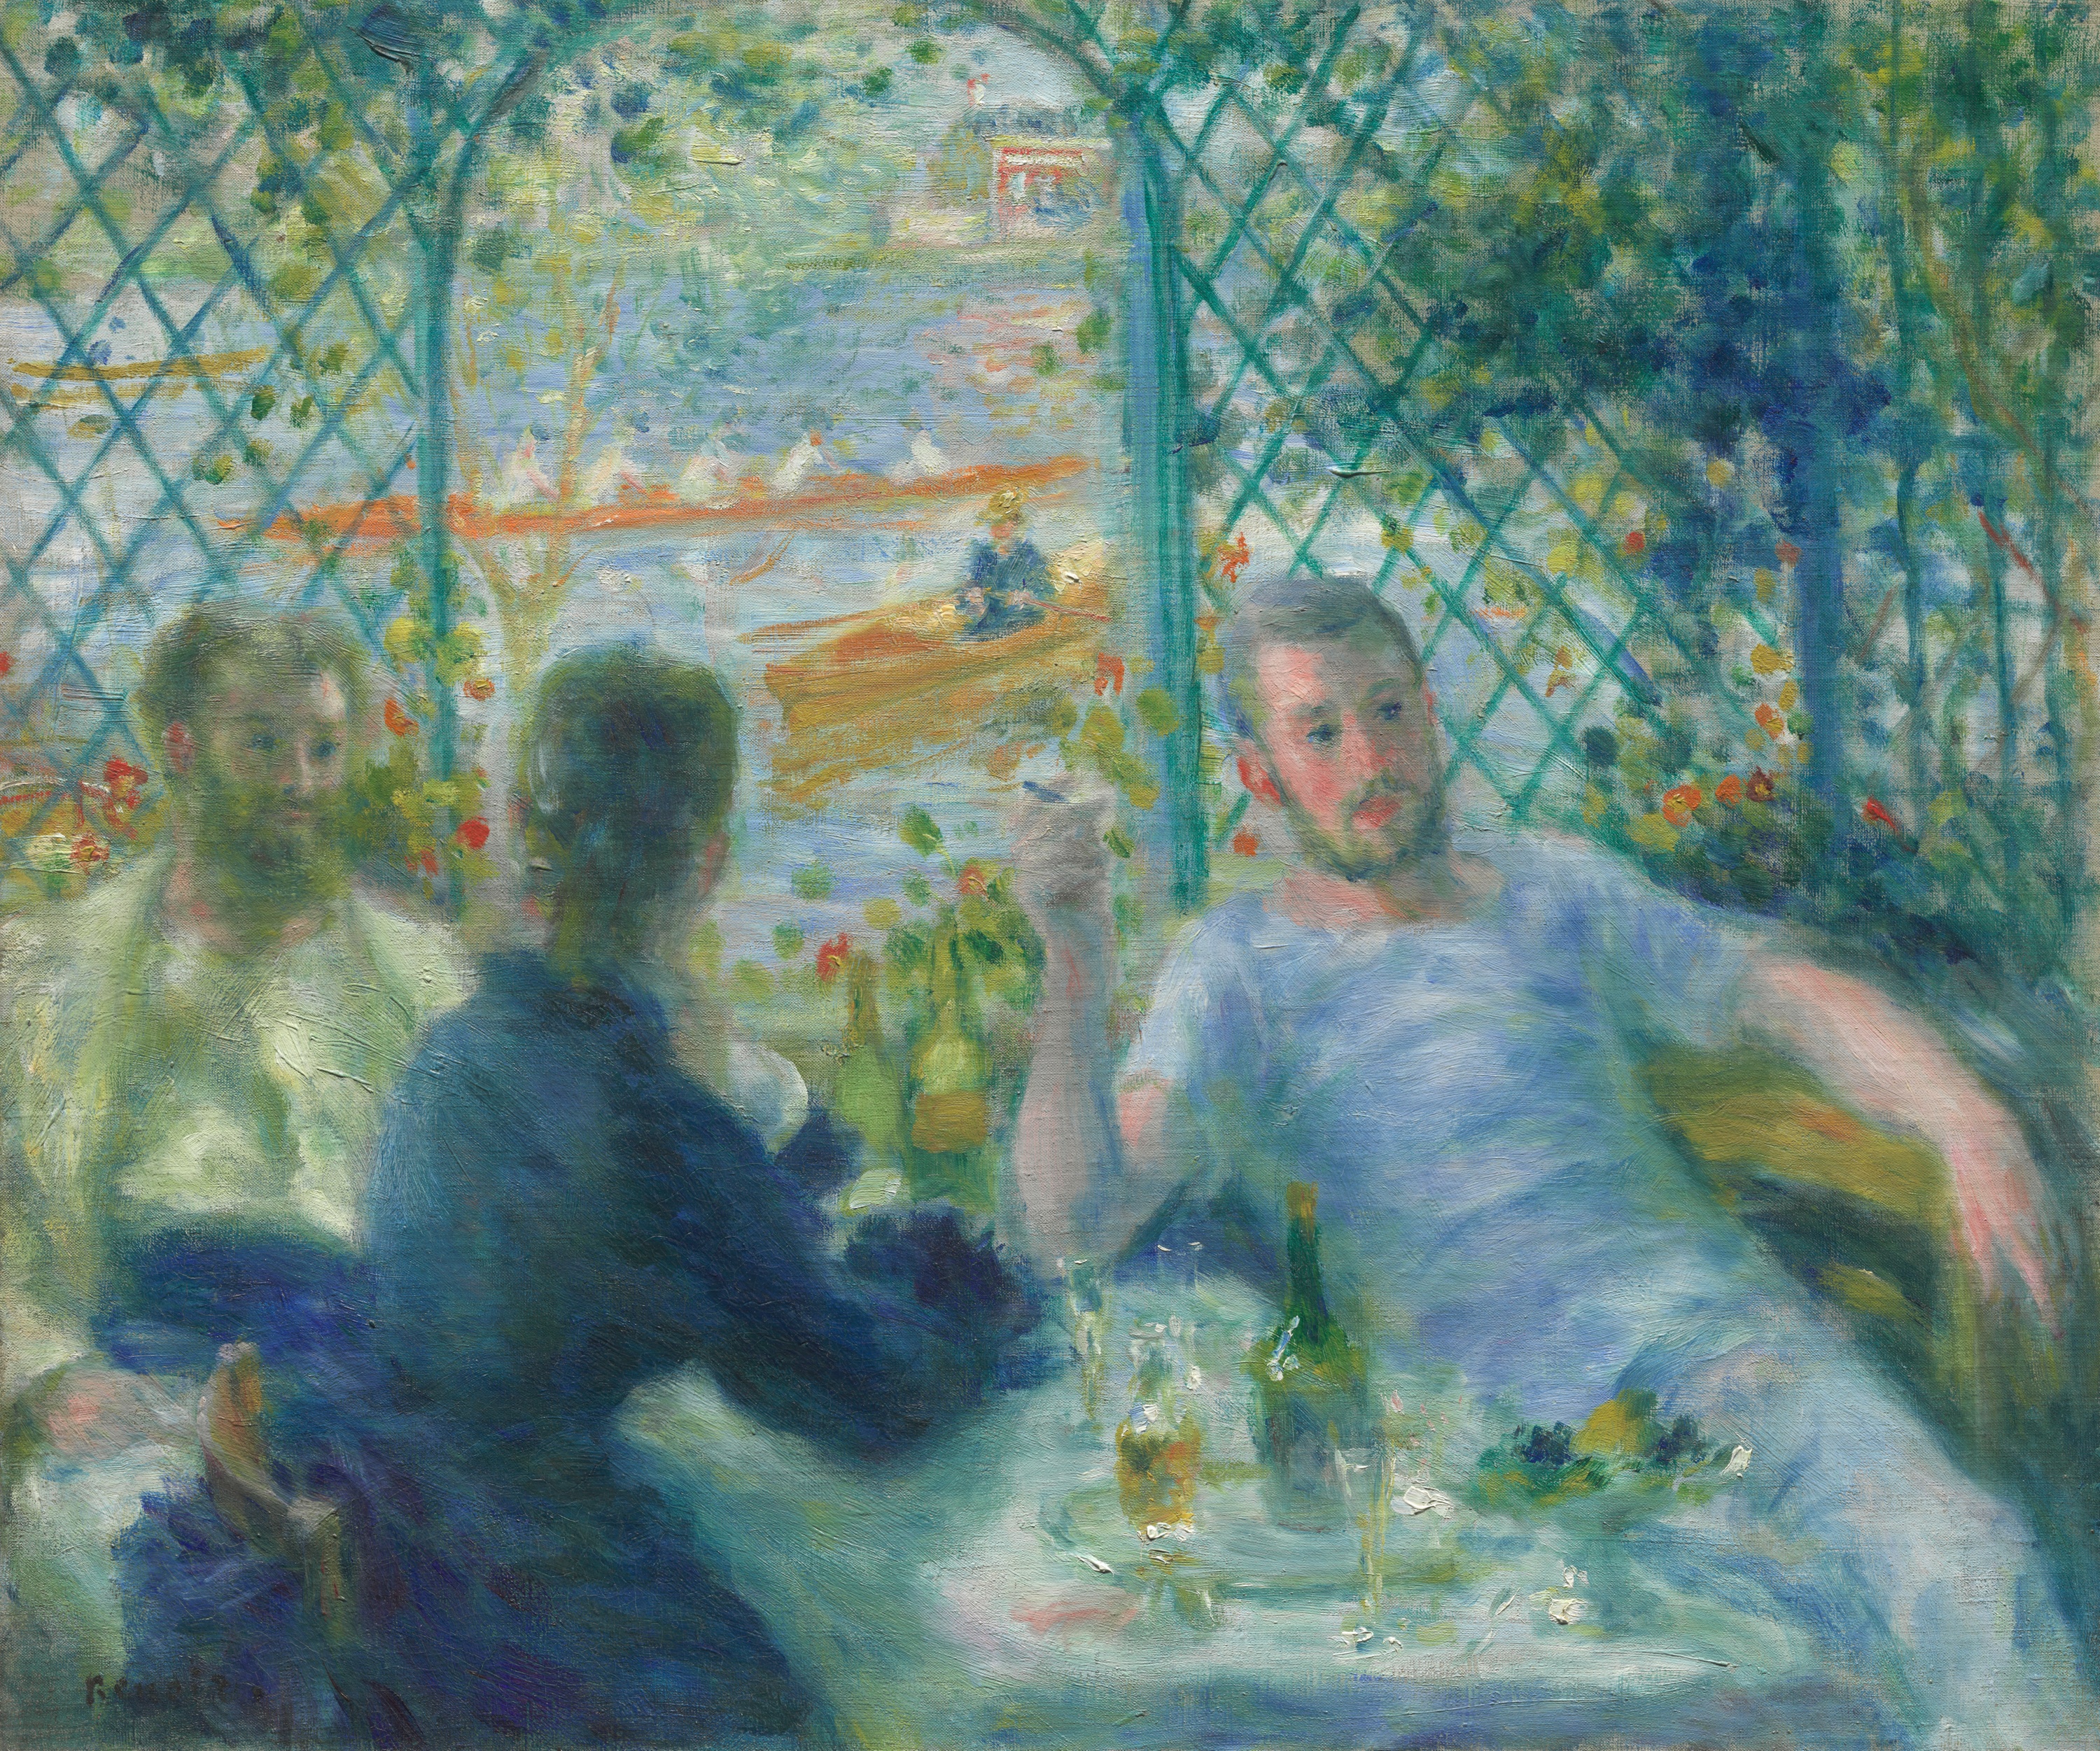 غداء في مطعم فورنايز by Pierre-Auguste Renoir - 1875 م - 55 × 65.9 سم 